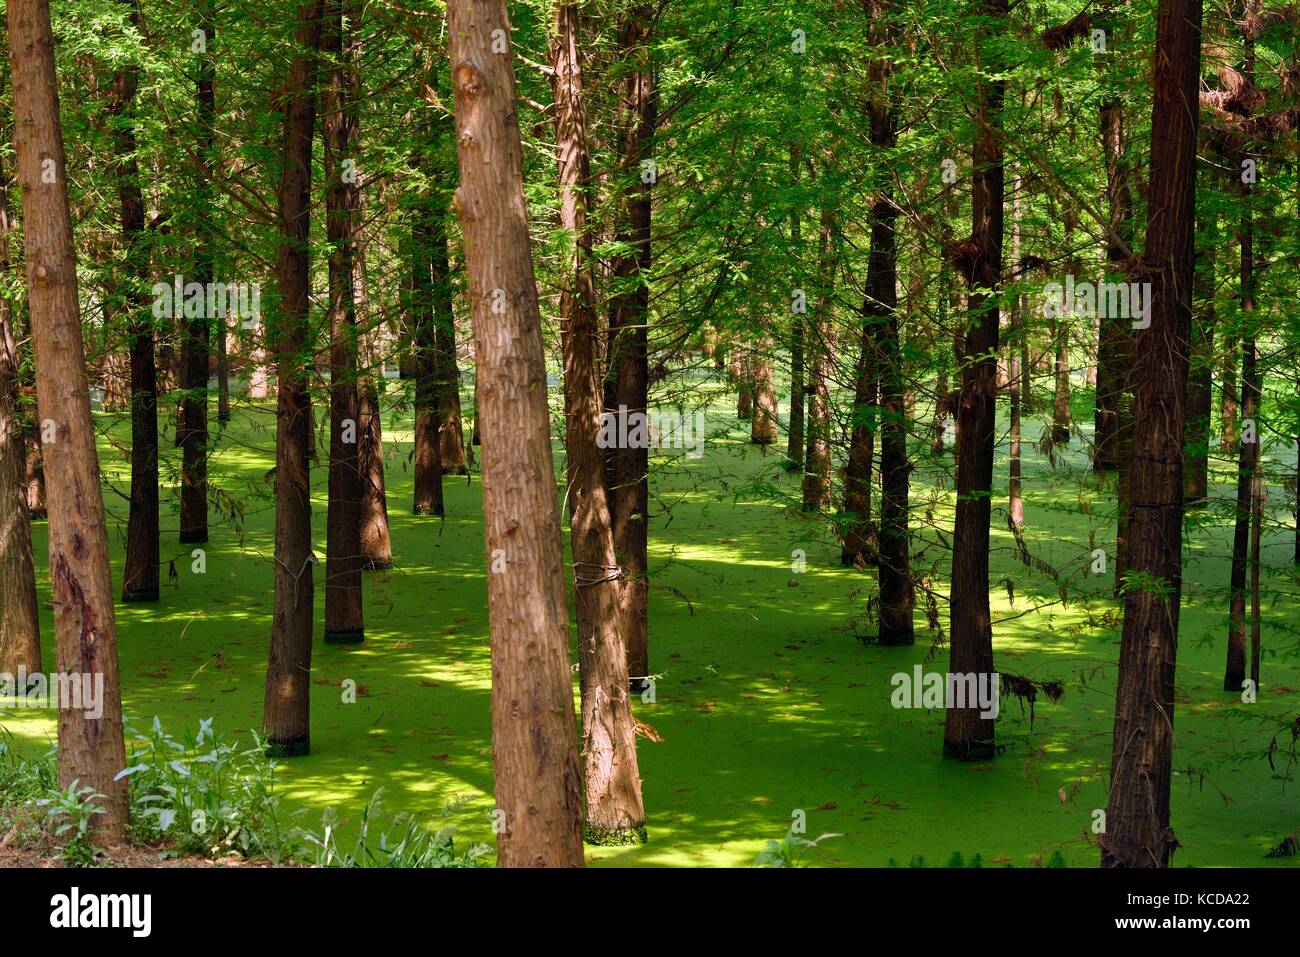 Laoyu river Wetland Park See Ökologie rehabilitation Erhaltung Baum einpflanzen. Teil der groß angelegten Dianchi-see rim Ökosphäre. Kunming, Yunnan China Stockfoto